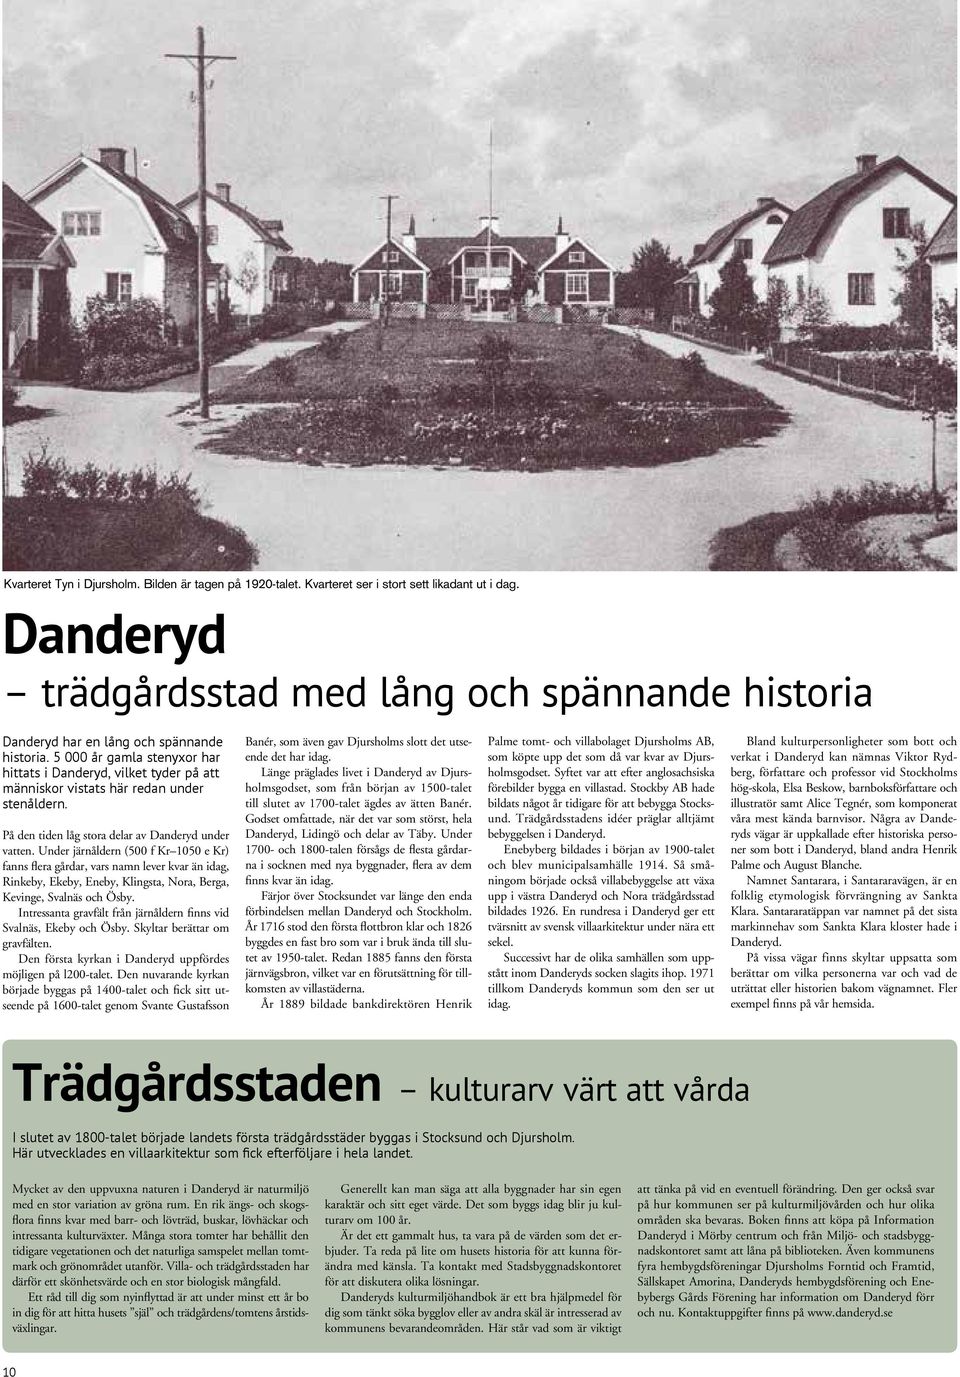 5 000 år gamla stenyxor har hittats i Danderyd, vilket tyder på att människor vistats här redan under stenåldern. På den tiden låg stora delar av Danderyd under vatten.